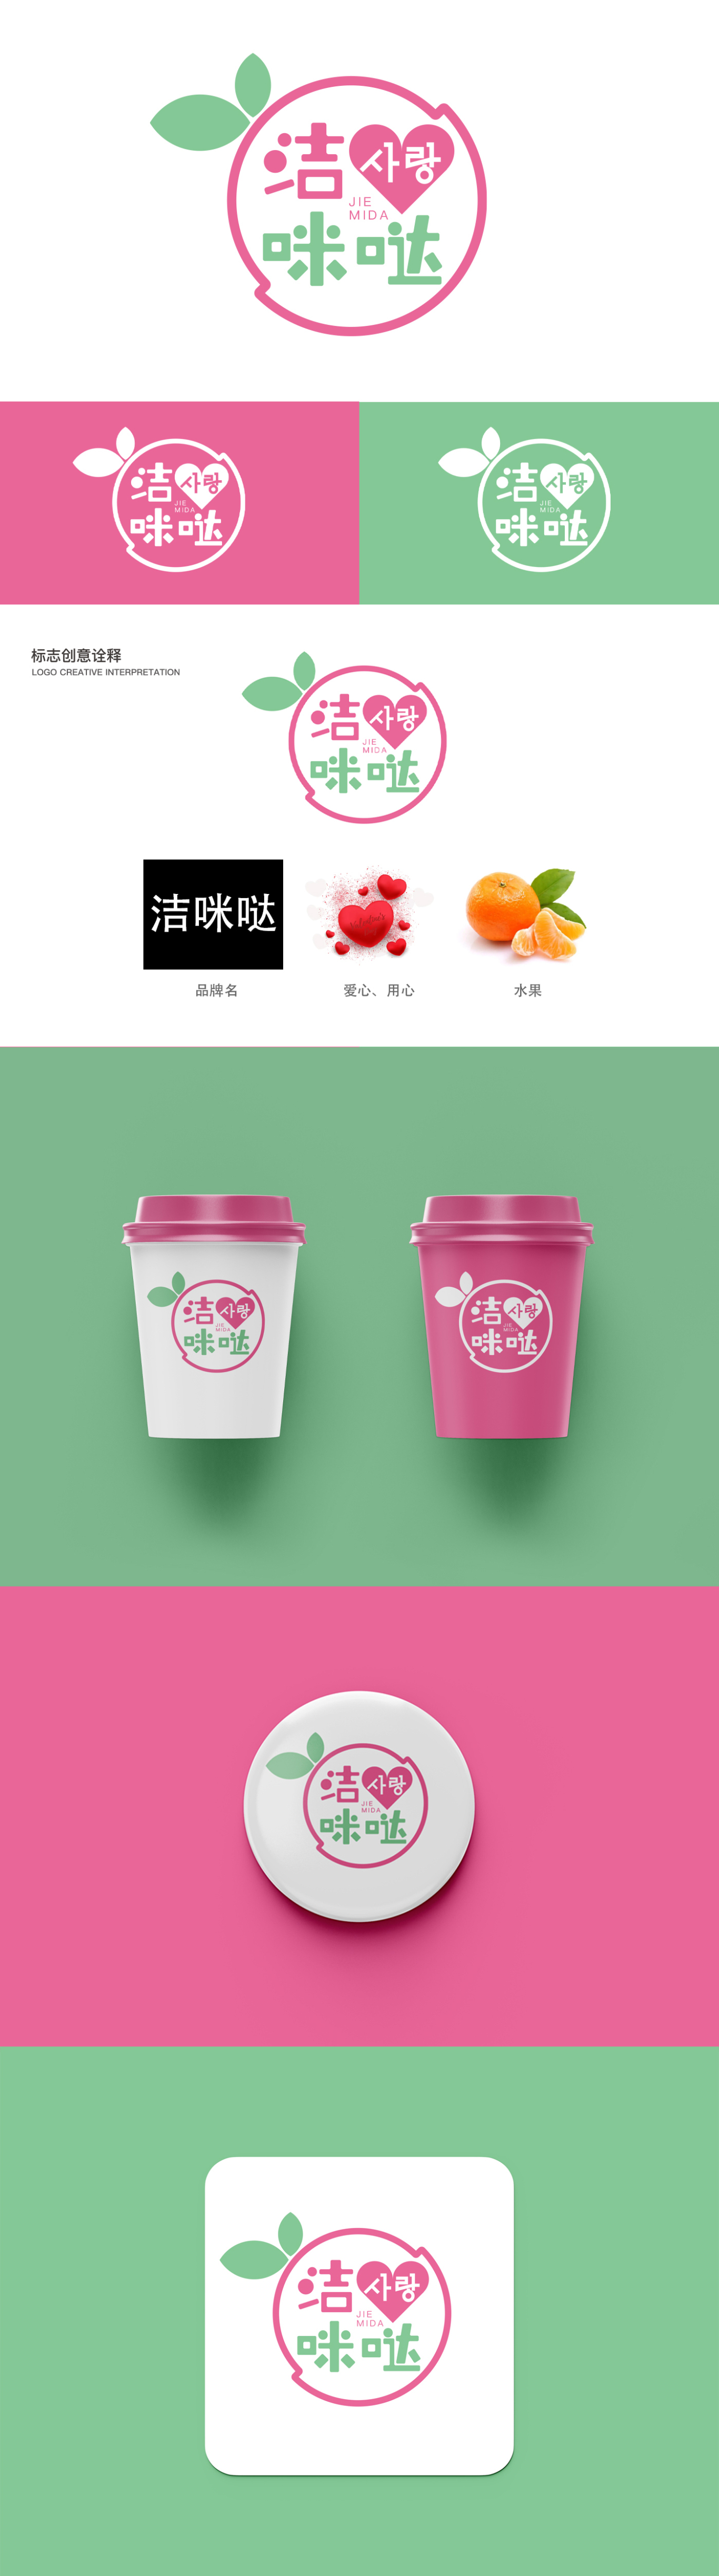 潔咪噠冰激凌店logo設計圖0